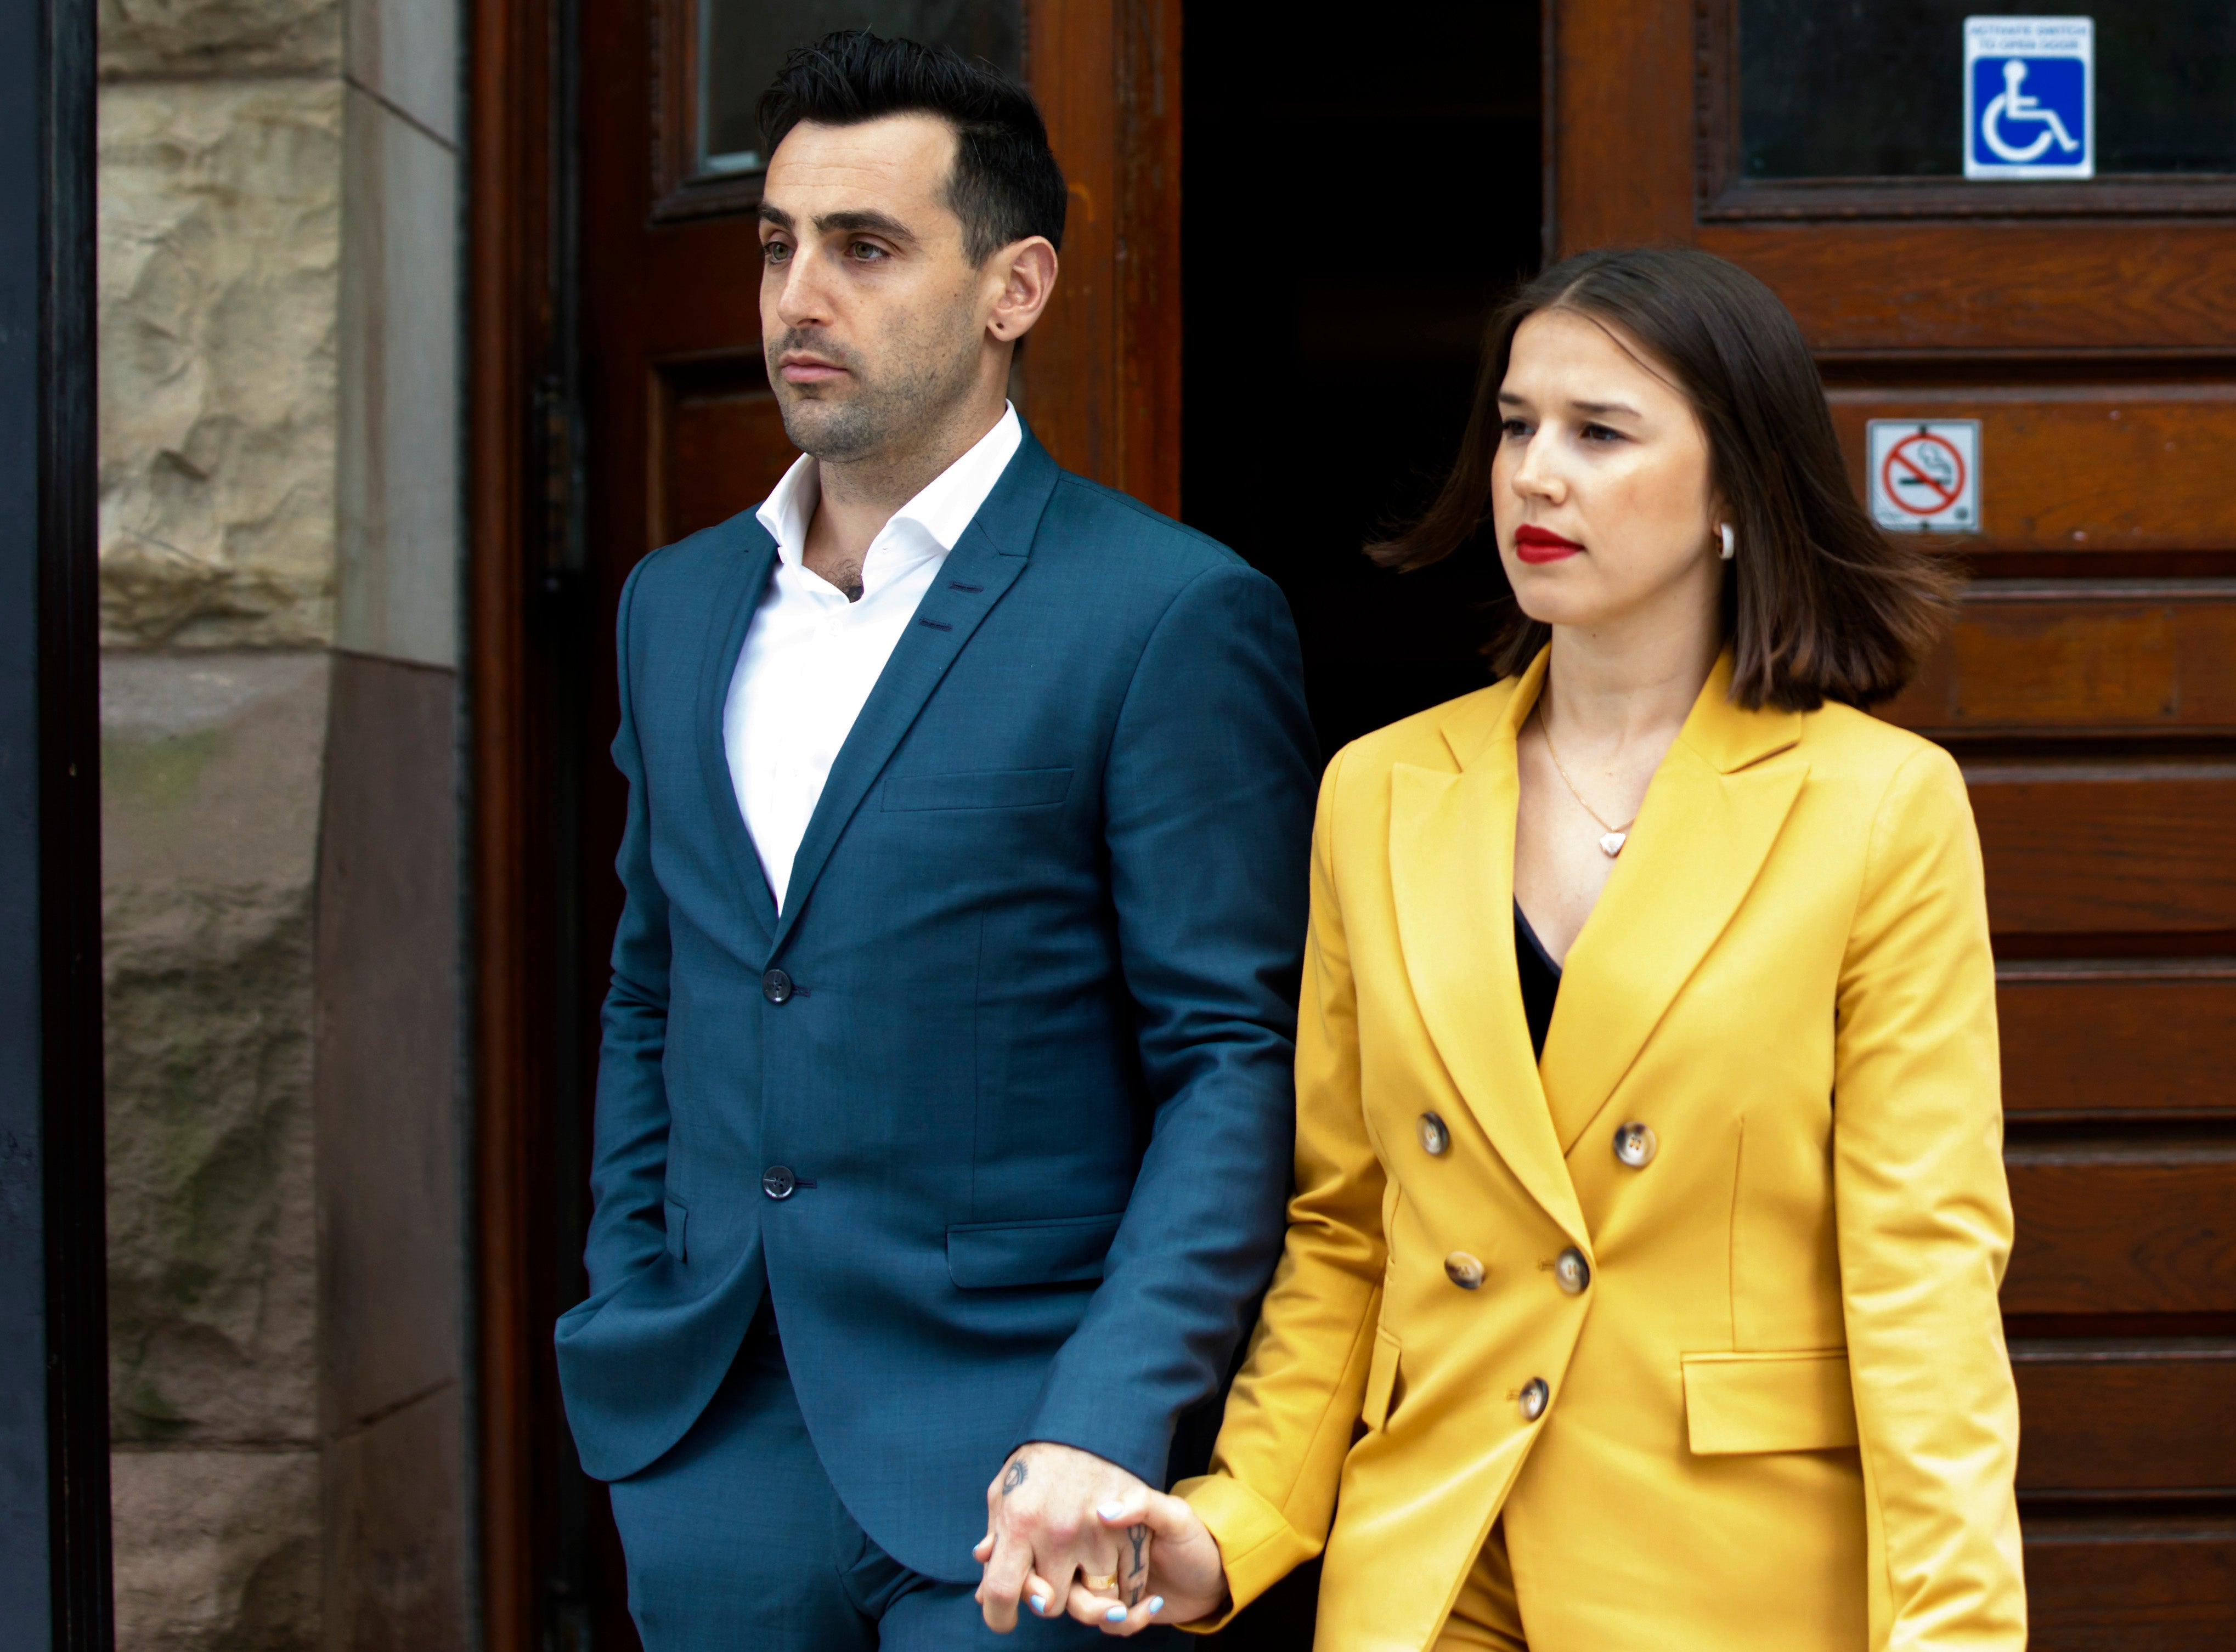 Jacob Hoggard leaves a Toronto courthouse alongside his wife Rebekah Asselstine